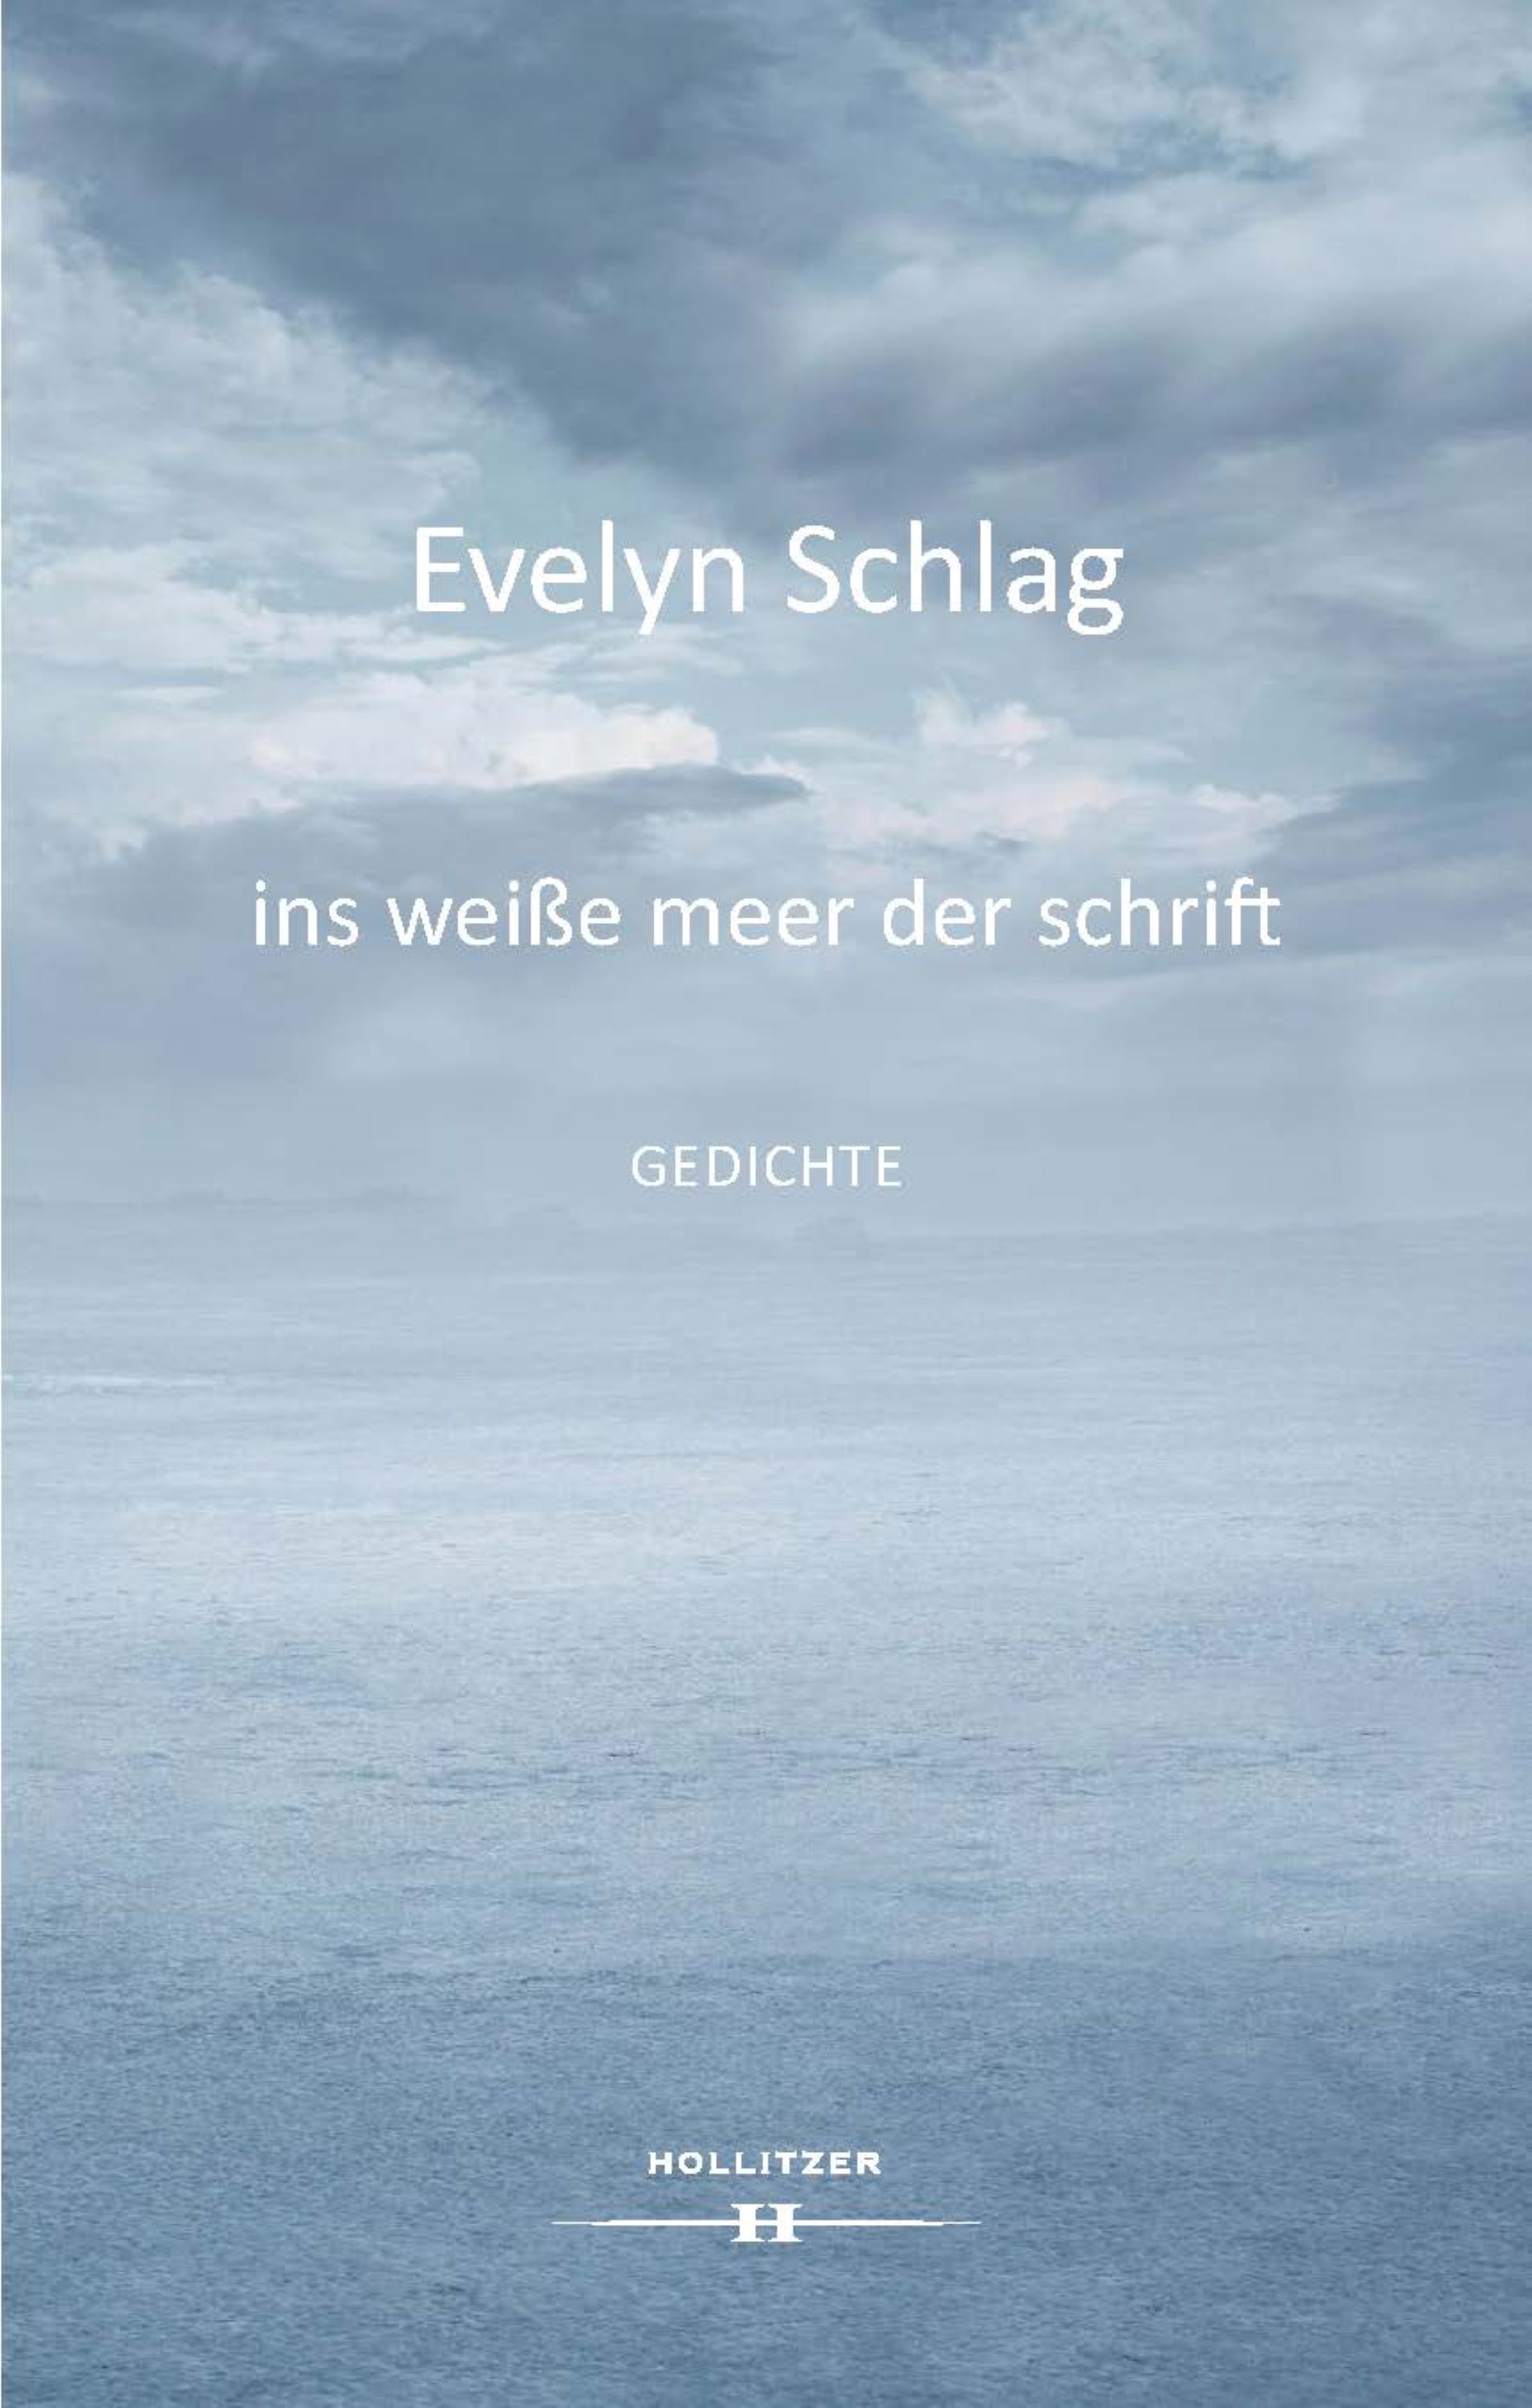 Evelyn Schlag: ins weiße meer der schrift. gedichte